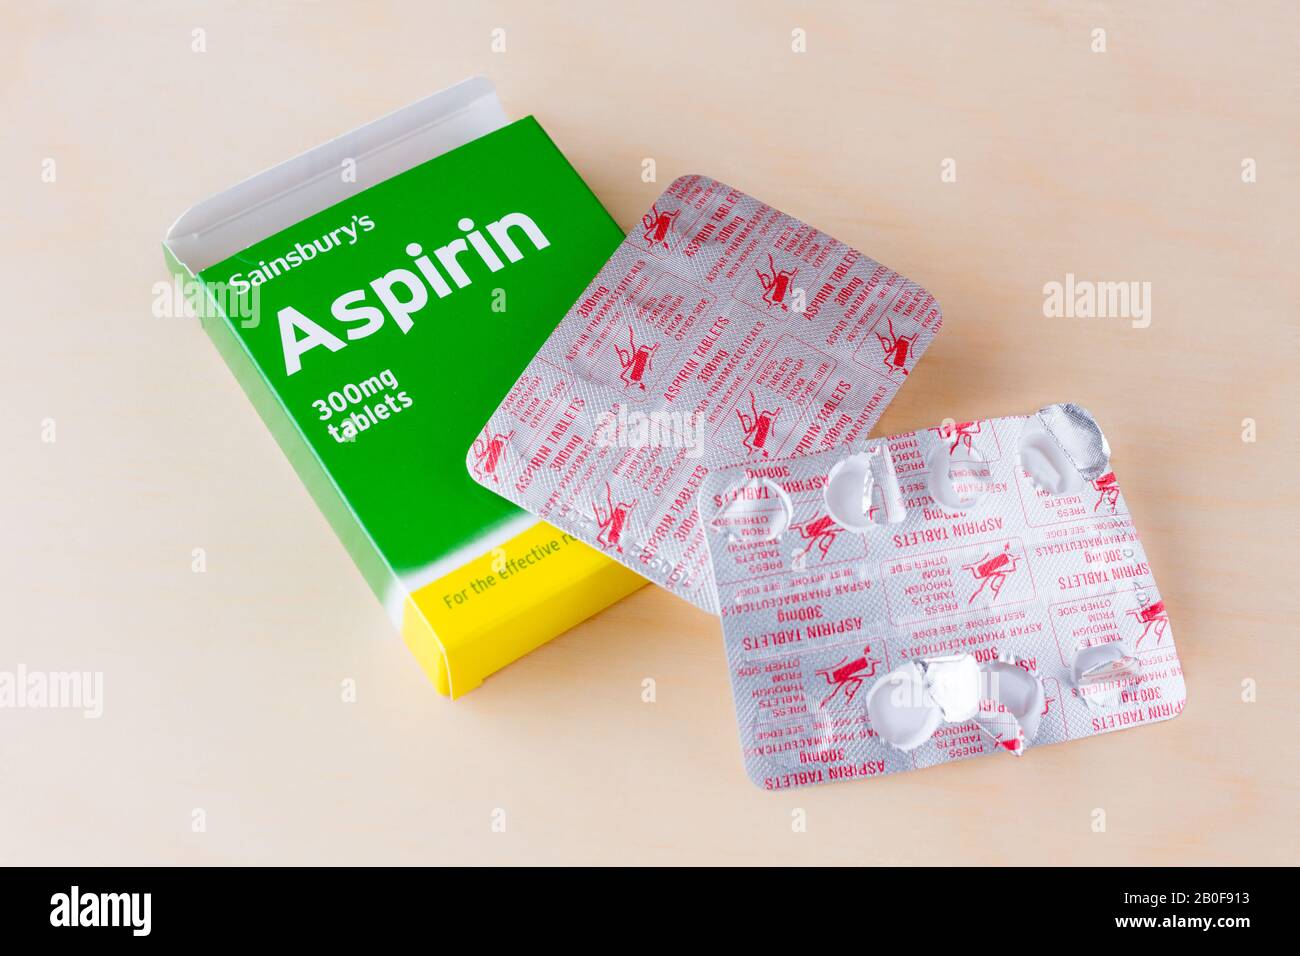 Fotografia di una scatola di compresse e blister di Aspirin, il marchio Sainsbury. Regno Unito Foto Stock